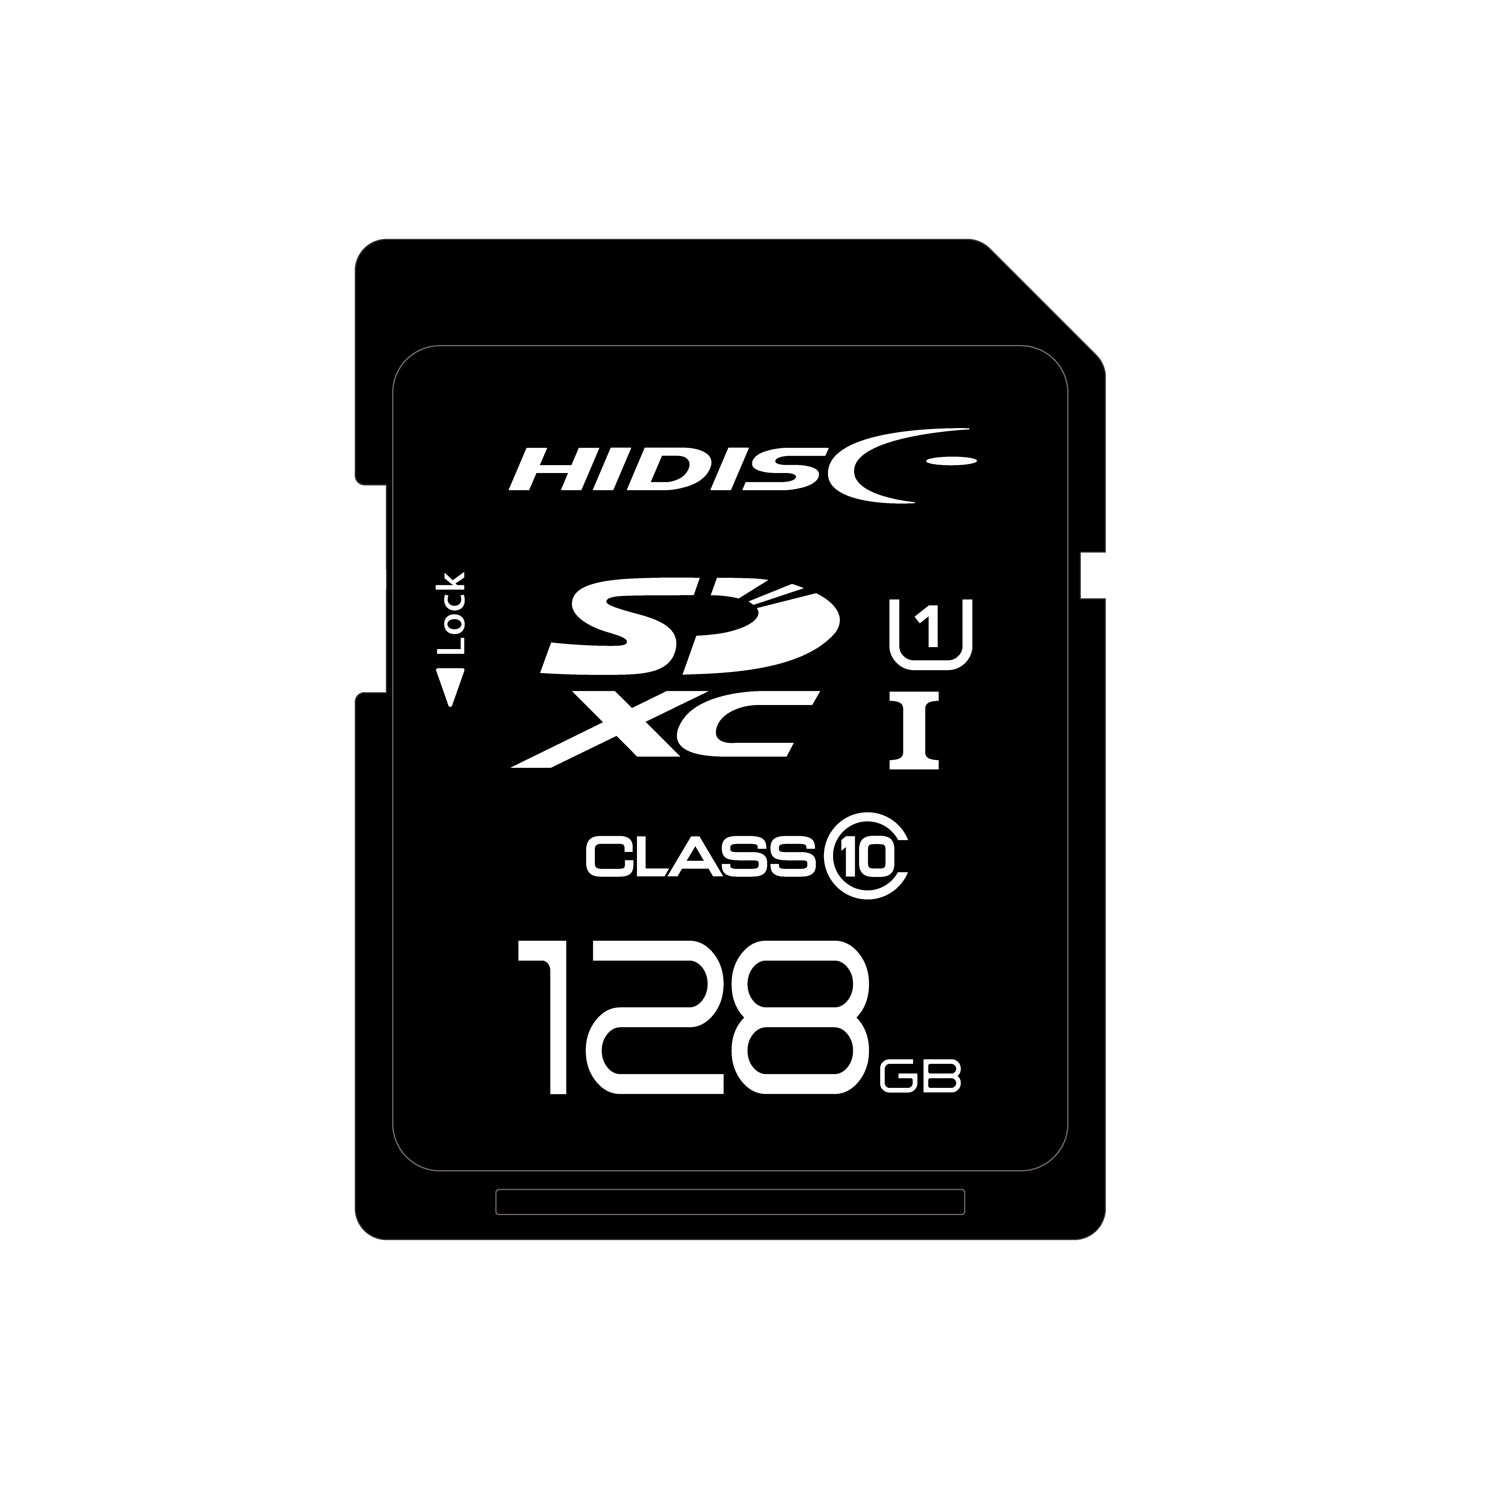 HIDISC 超高速SDXCカード 128GB CLASS10 UHS-I 対応